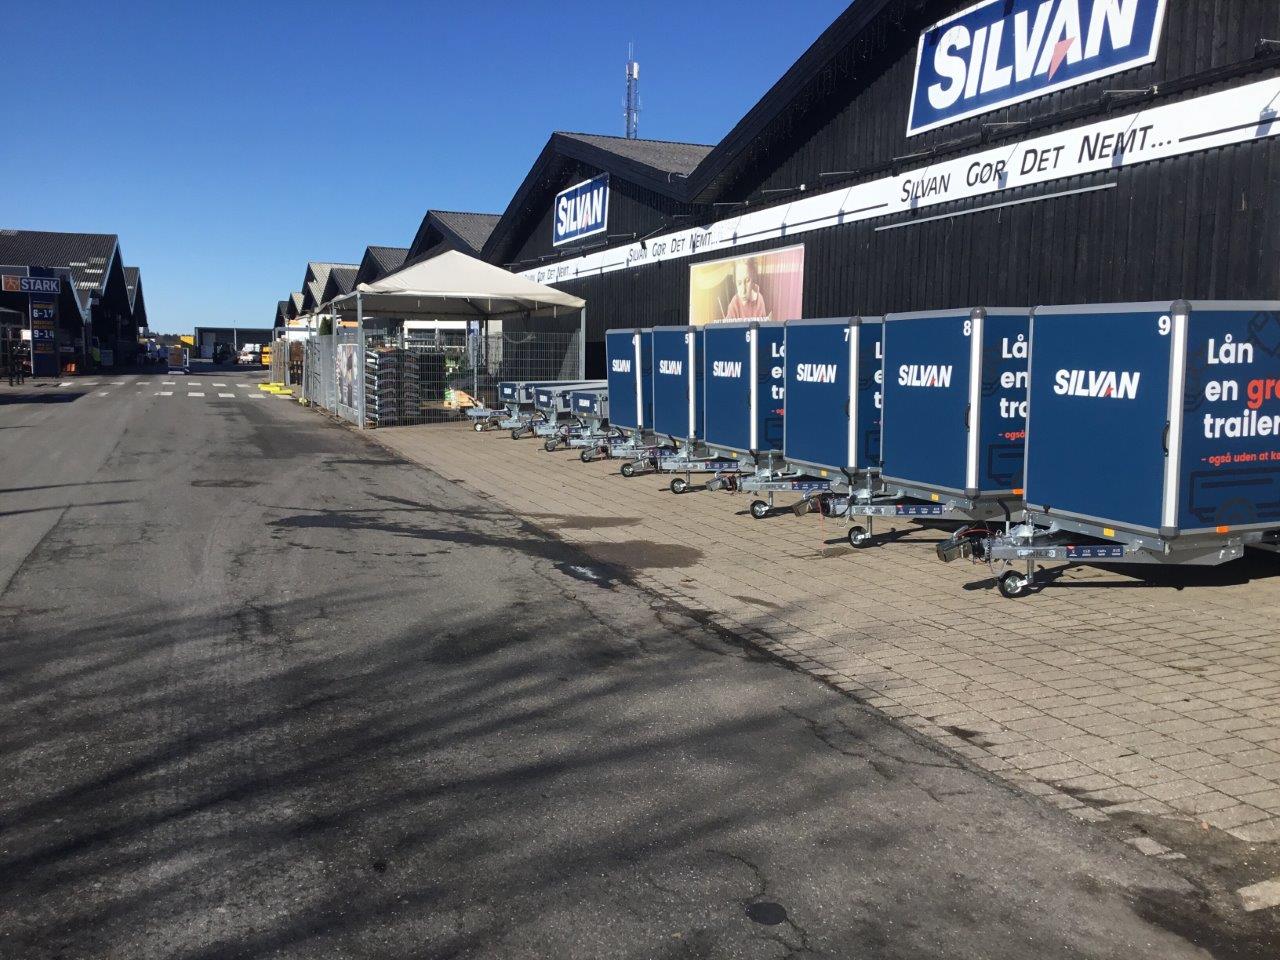 Silvan i Odense M runder 19000 gratis trailerudlån og udvider flåden